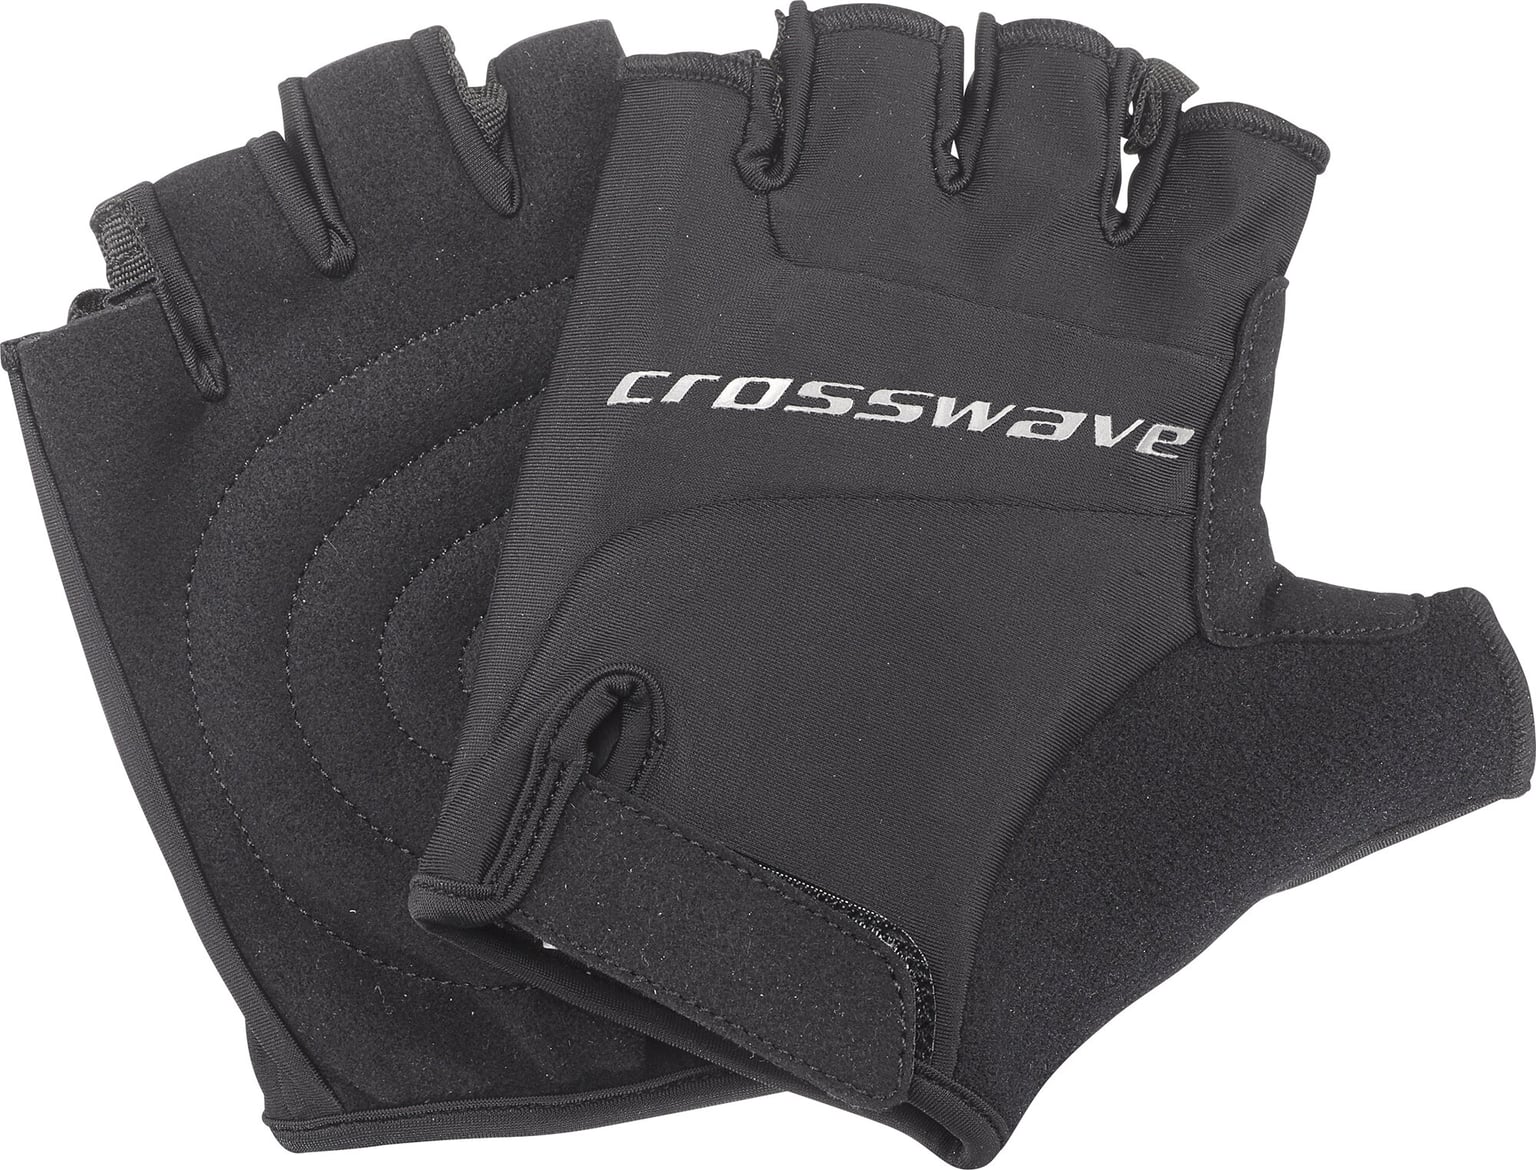 Crosswave Crosswave Handschuhe Bike-Handschuhe schwarz 1